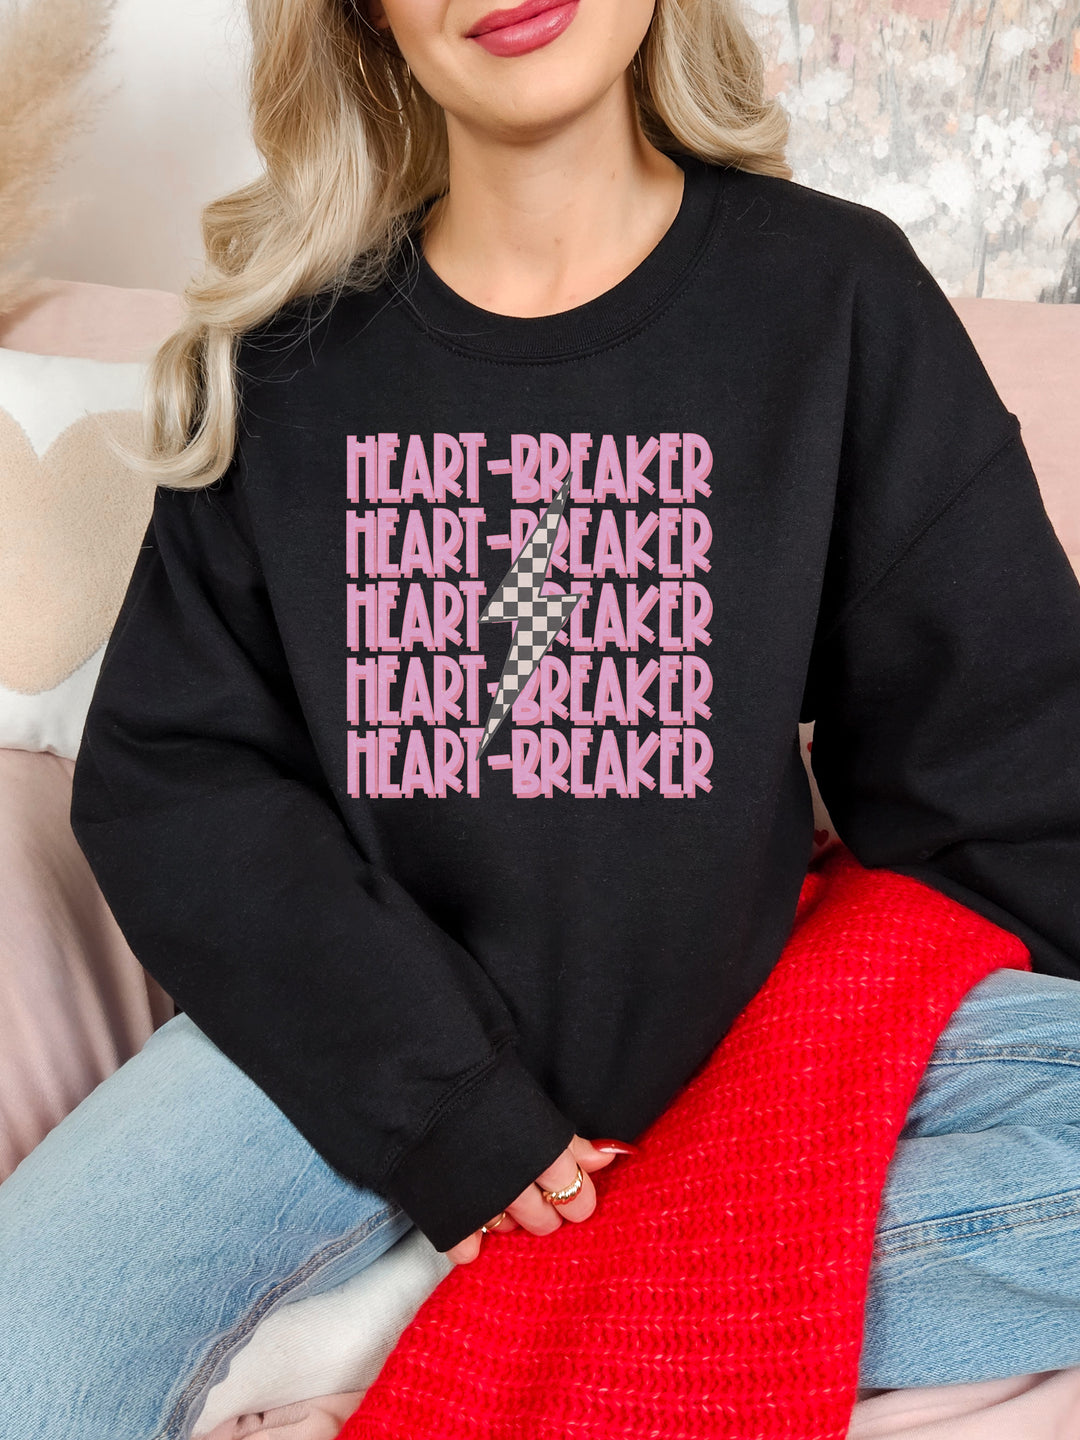 Heart Breaker Sweater